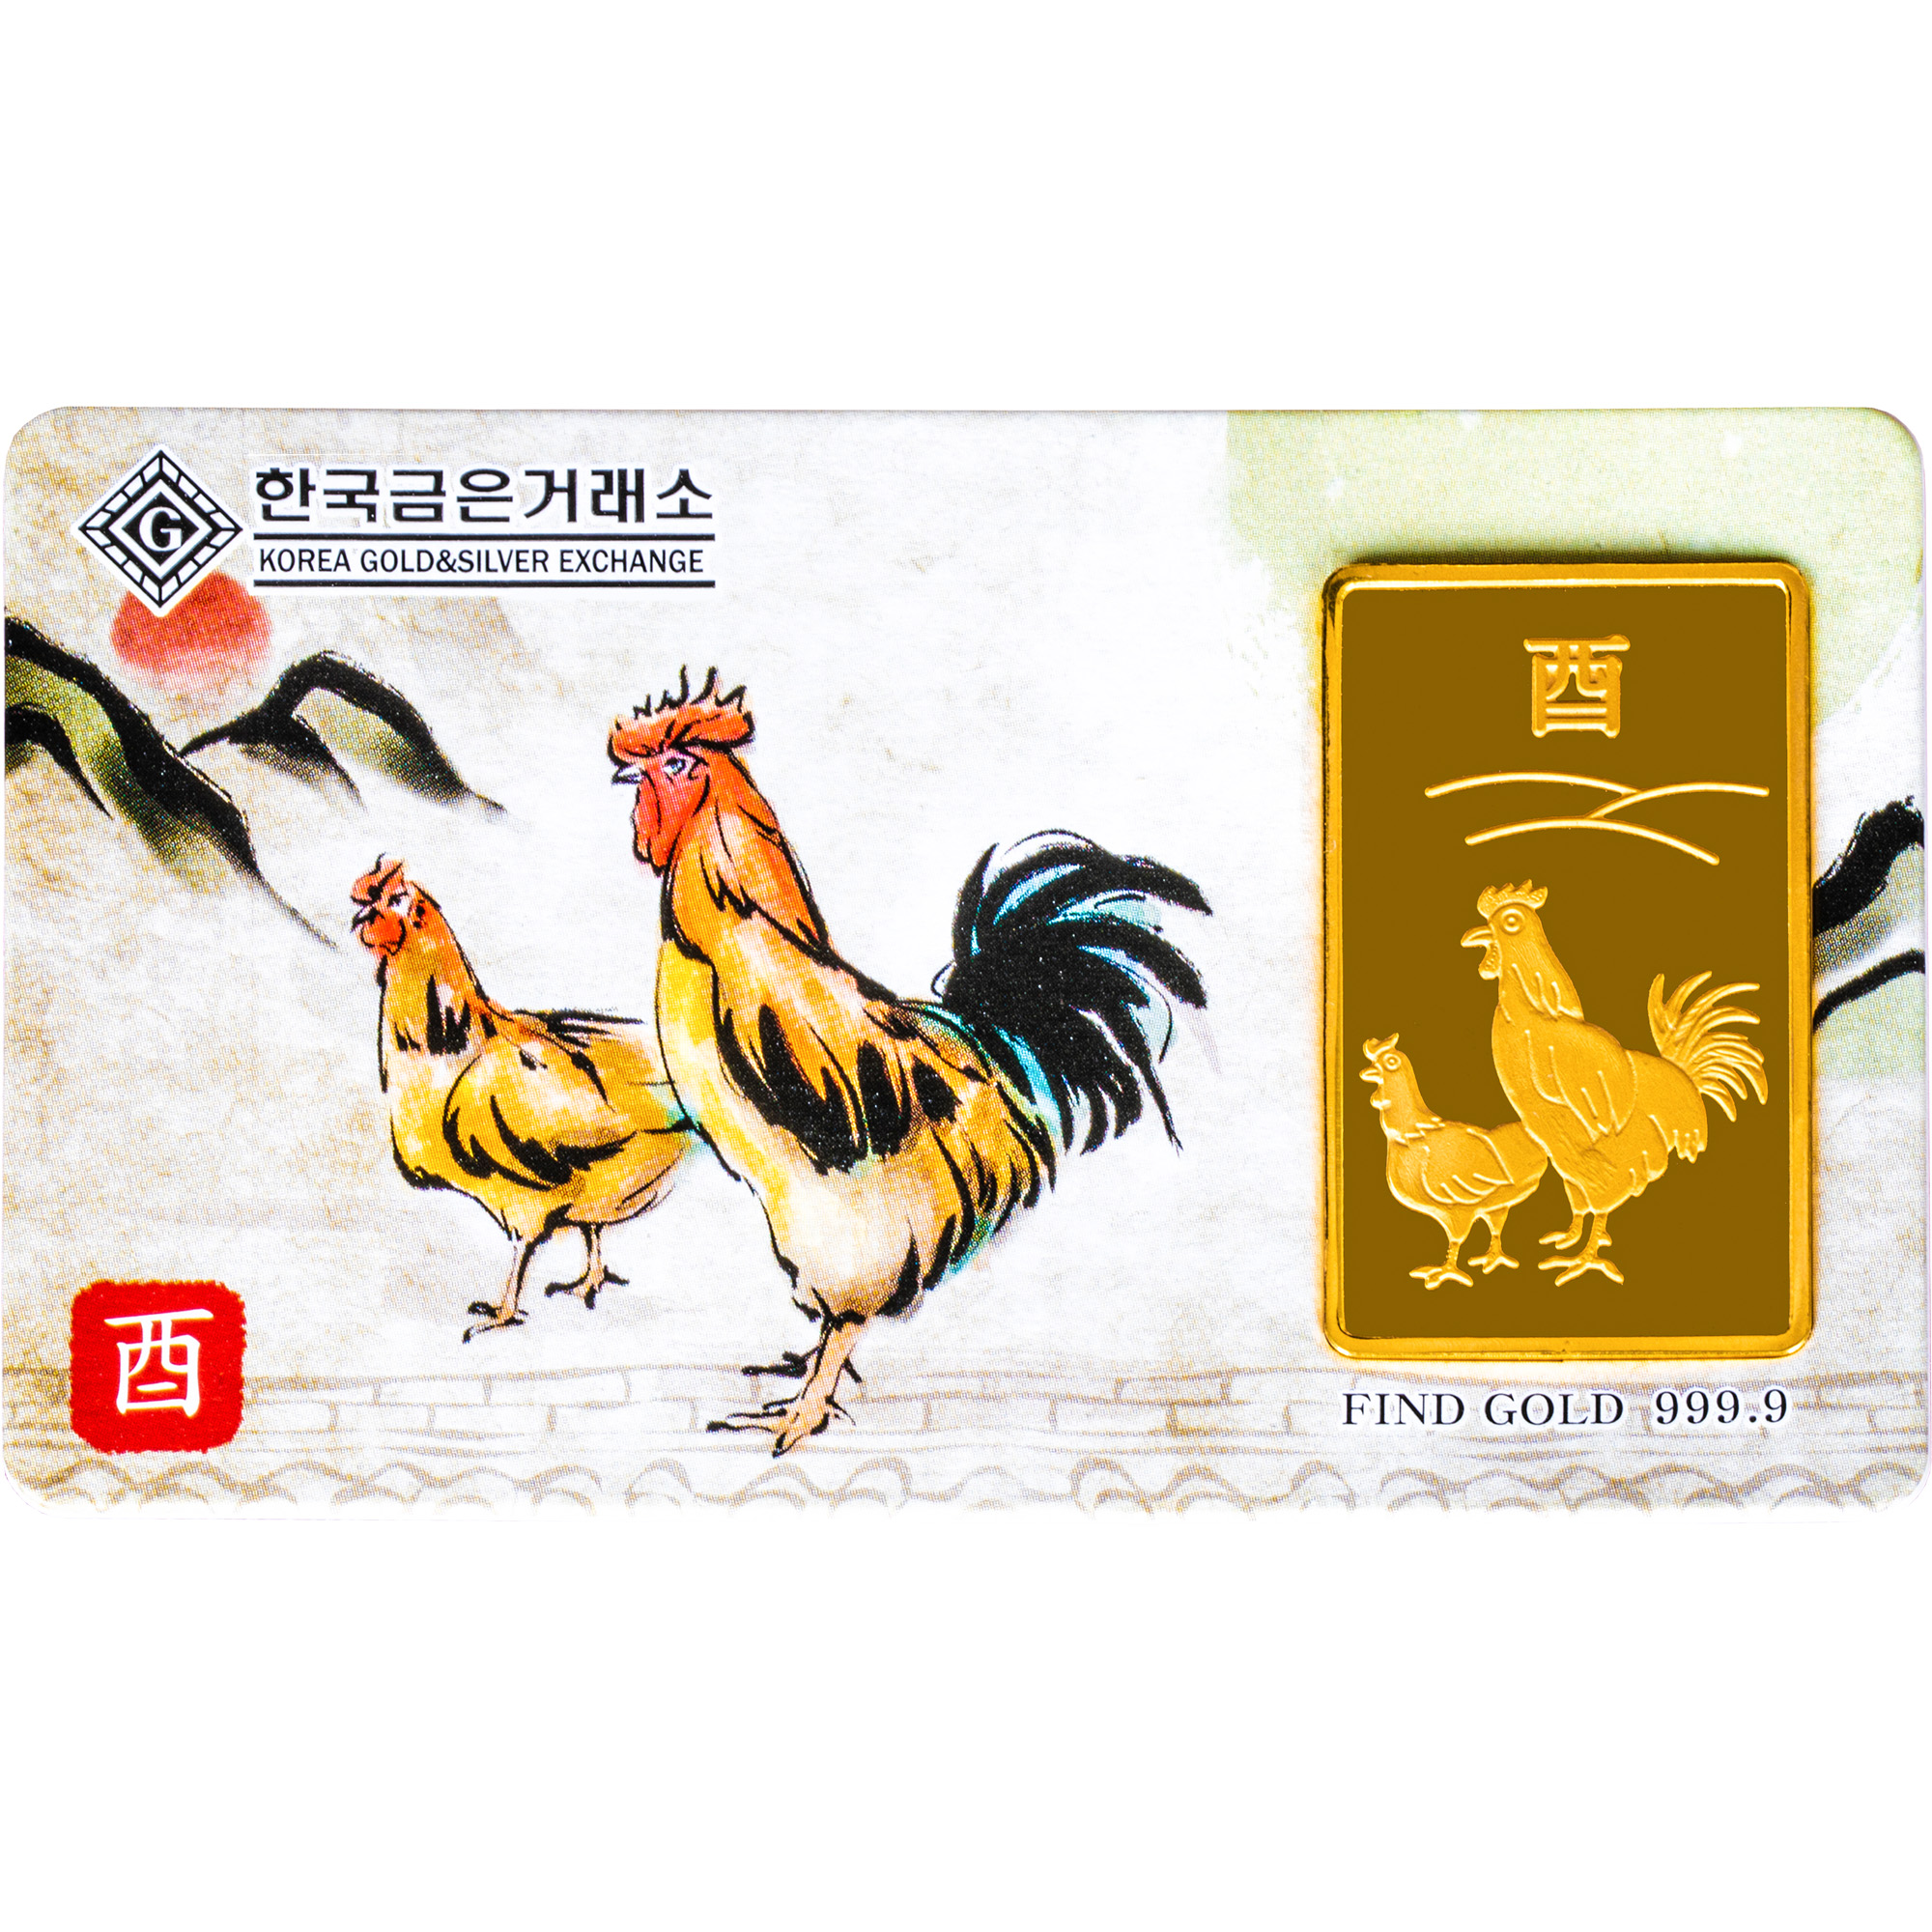 24K 닭띠 카드형 골드바(37.5g)